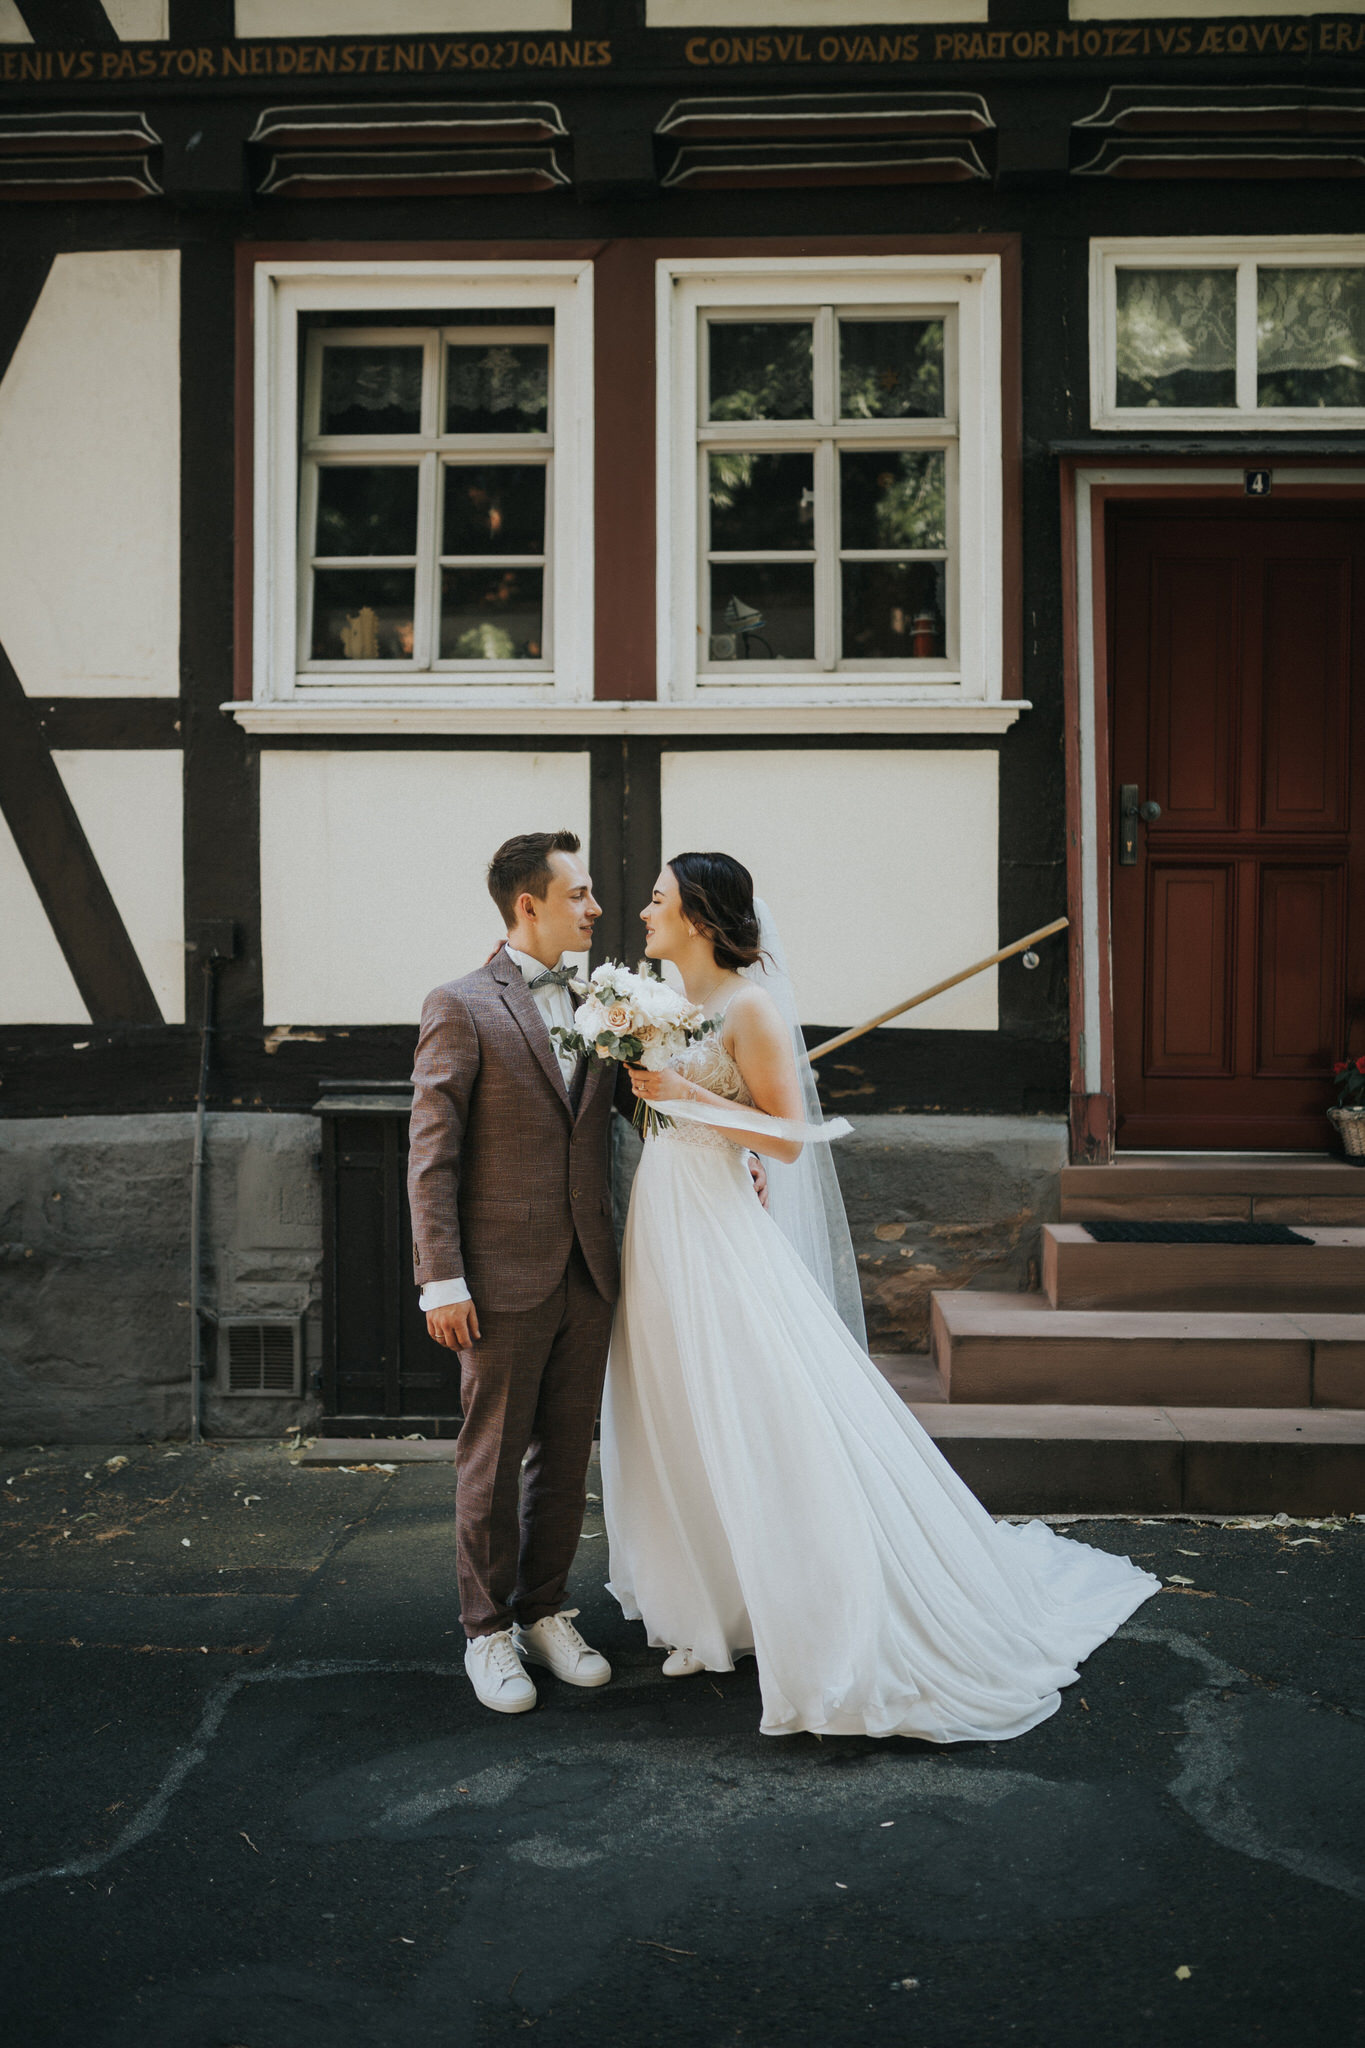 Verträumtes Brautpaarfotoshooting in der Altstadt von Witzenhausen – Die Liebe des Paares wird in romantischen Bildern eingefangen, während sie durch die charmanten Gassen und historischen Plätze schlendern.